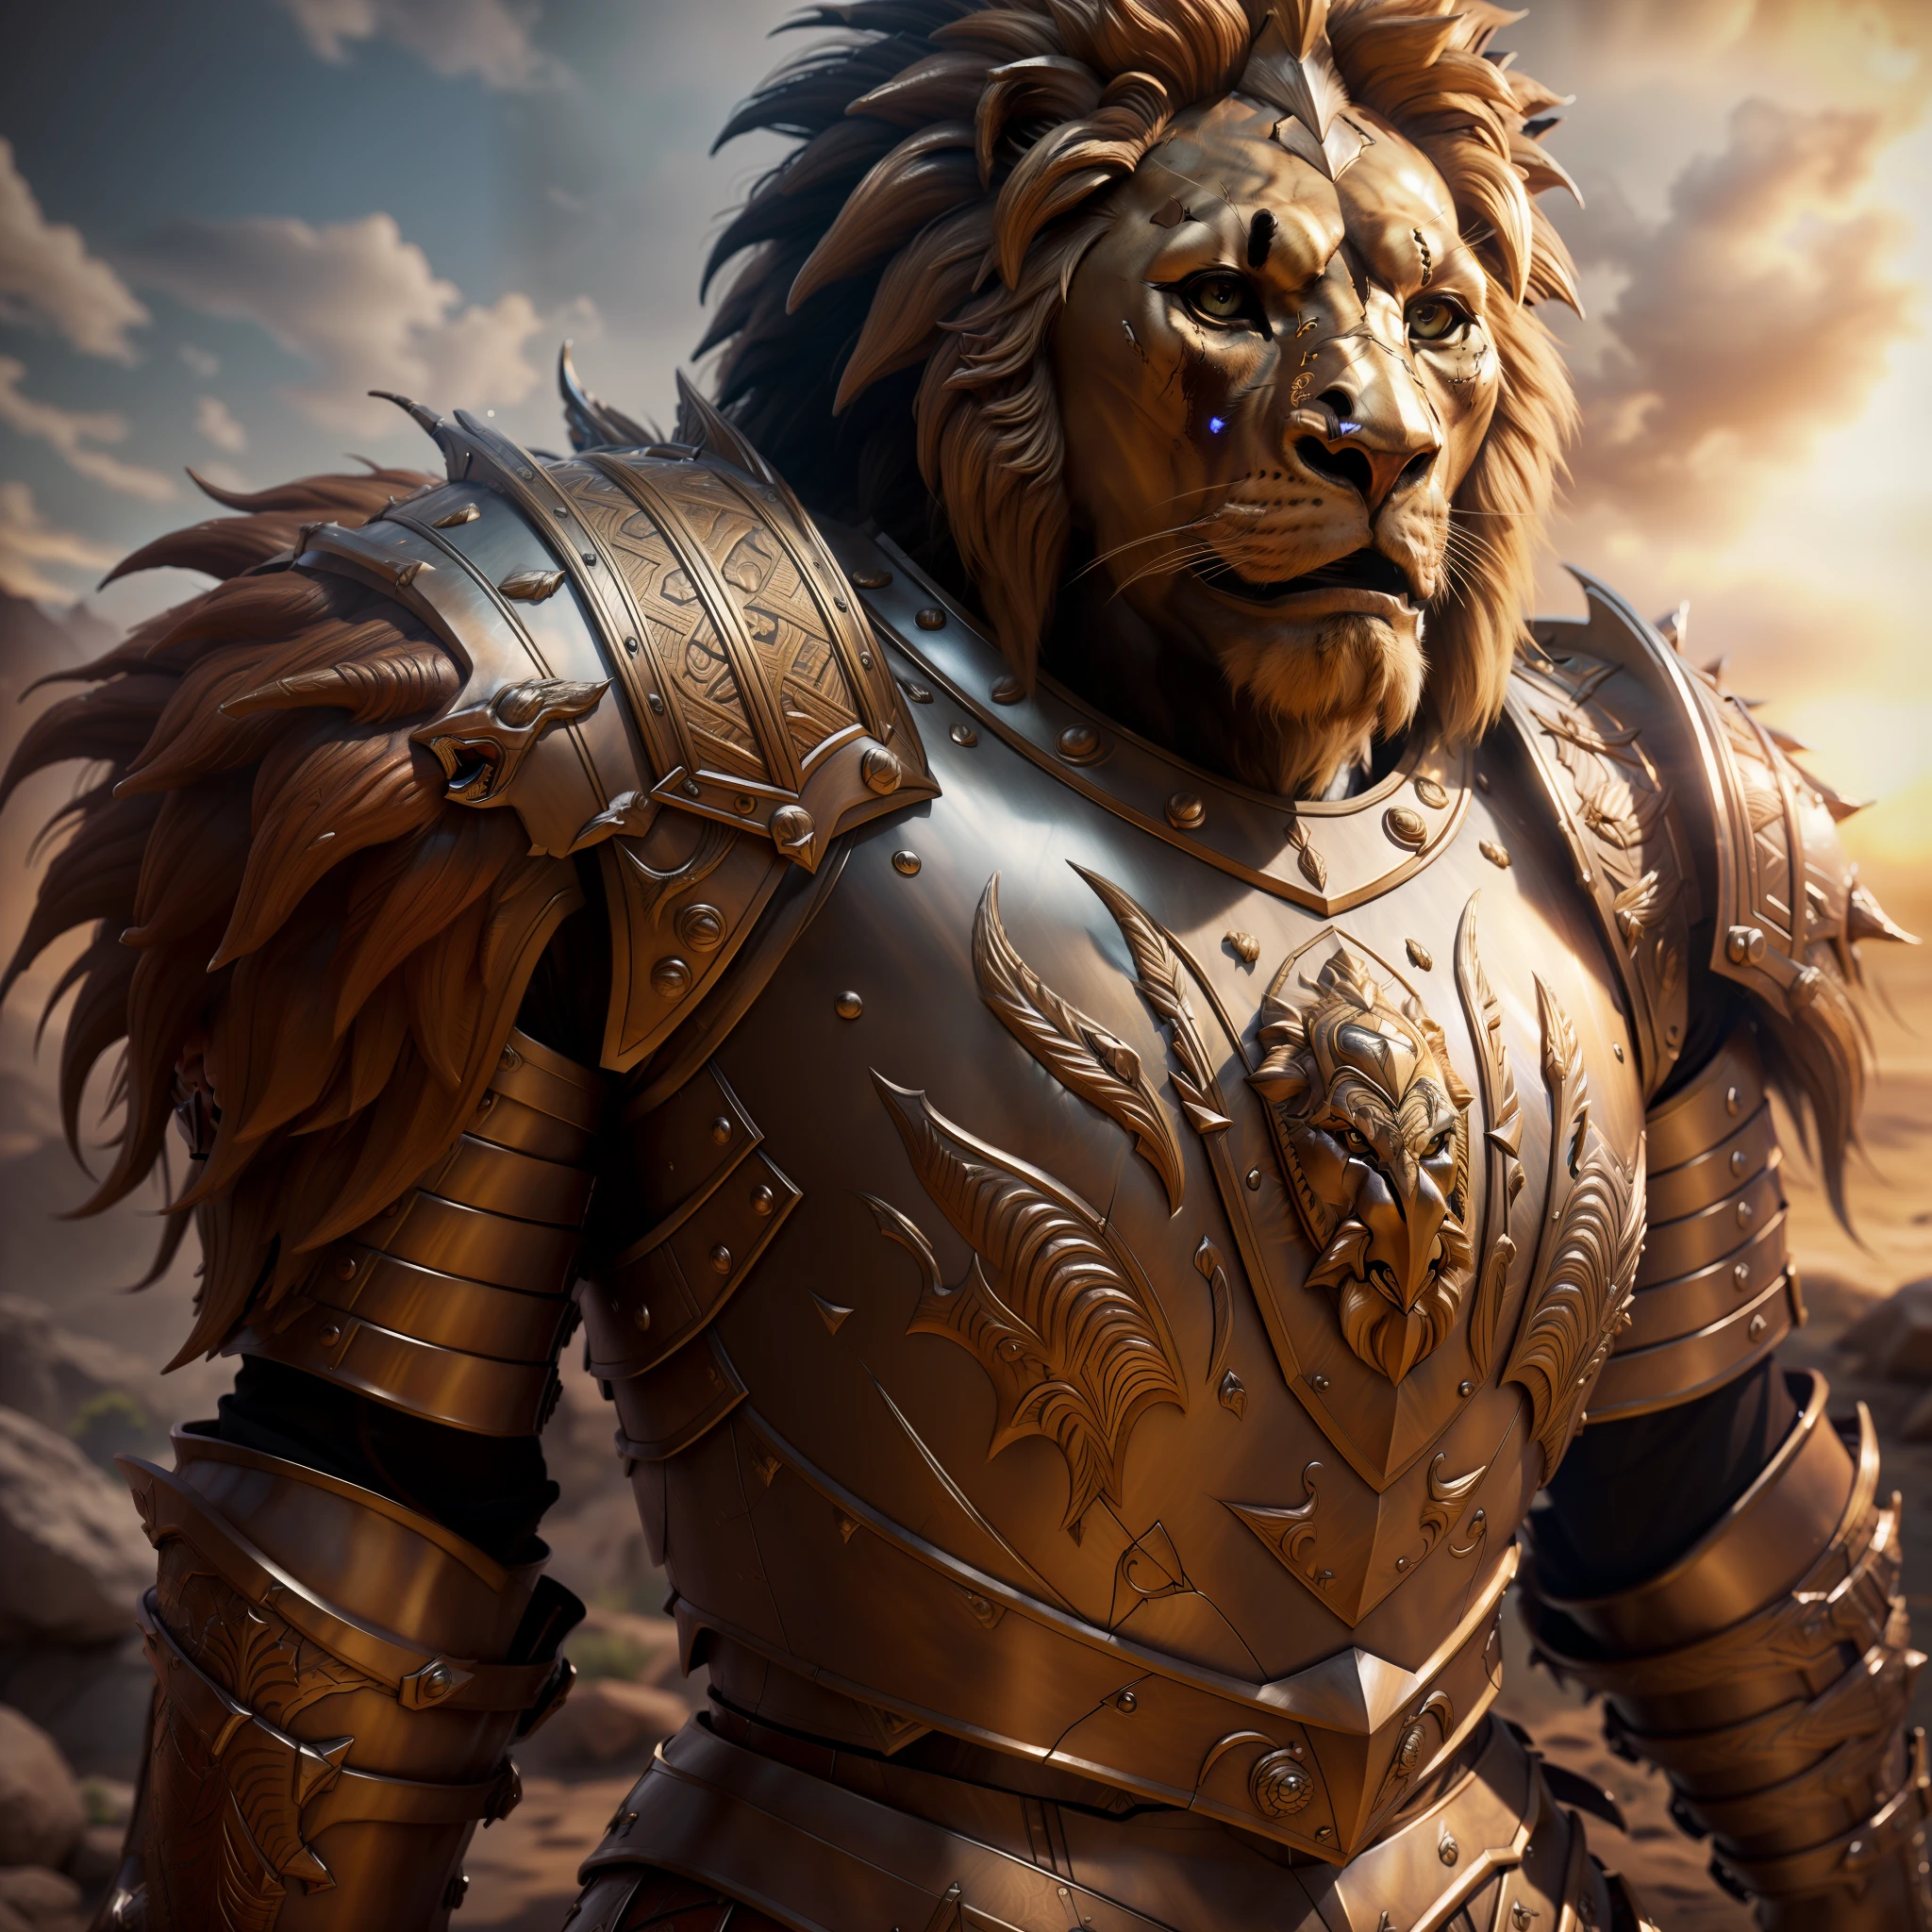 Ein humanoider Löwenkrieger mit prächtiger Rüstung mit vielen Details in der Rüstung, Detailliertes Löwenfell, detaillierte Löwe wütend Augen, realistisch, 8k